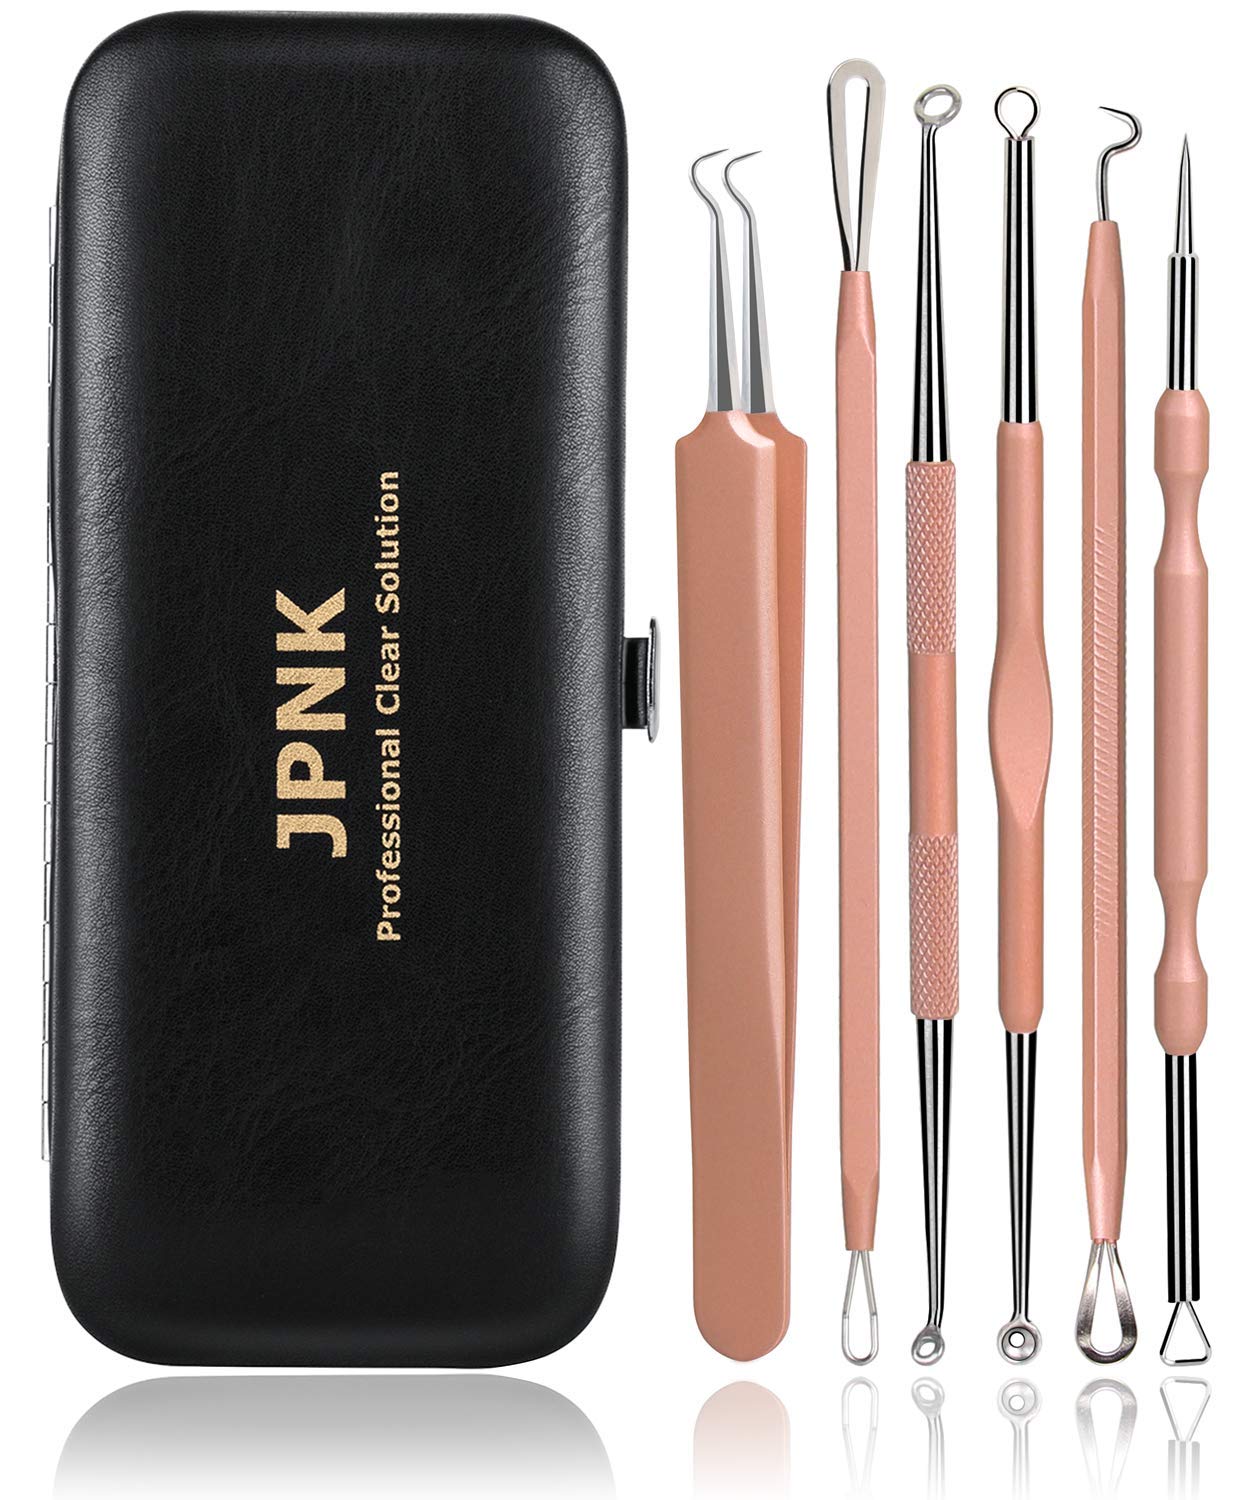 JPNK NEW Pink Blackhead Remover Tools